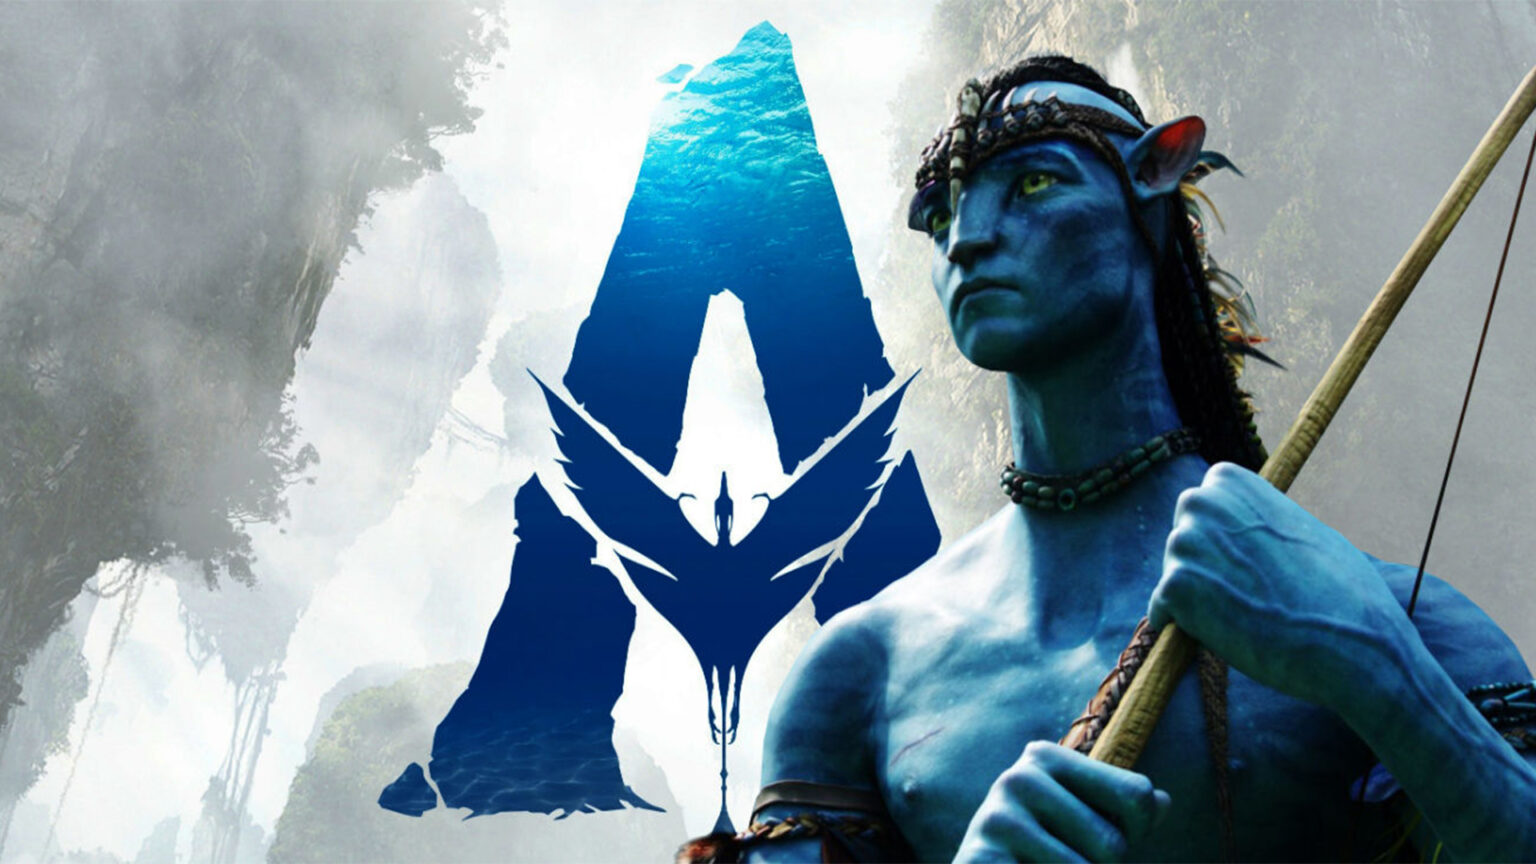 Avatar2 film streaming 2020, Avatar 2 film streaming - Cinemondium